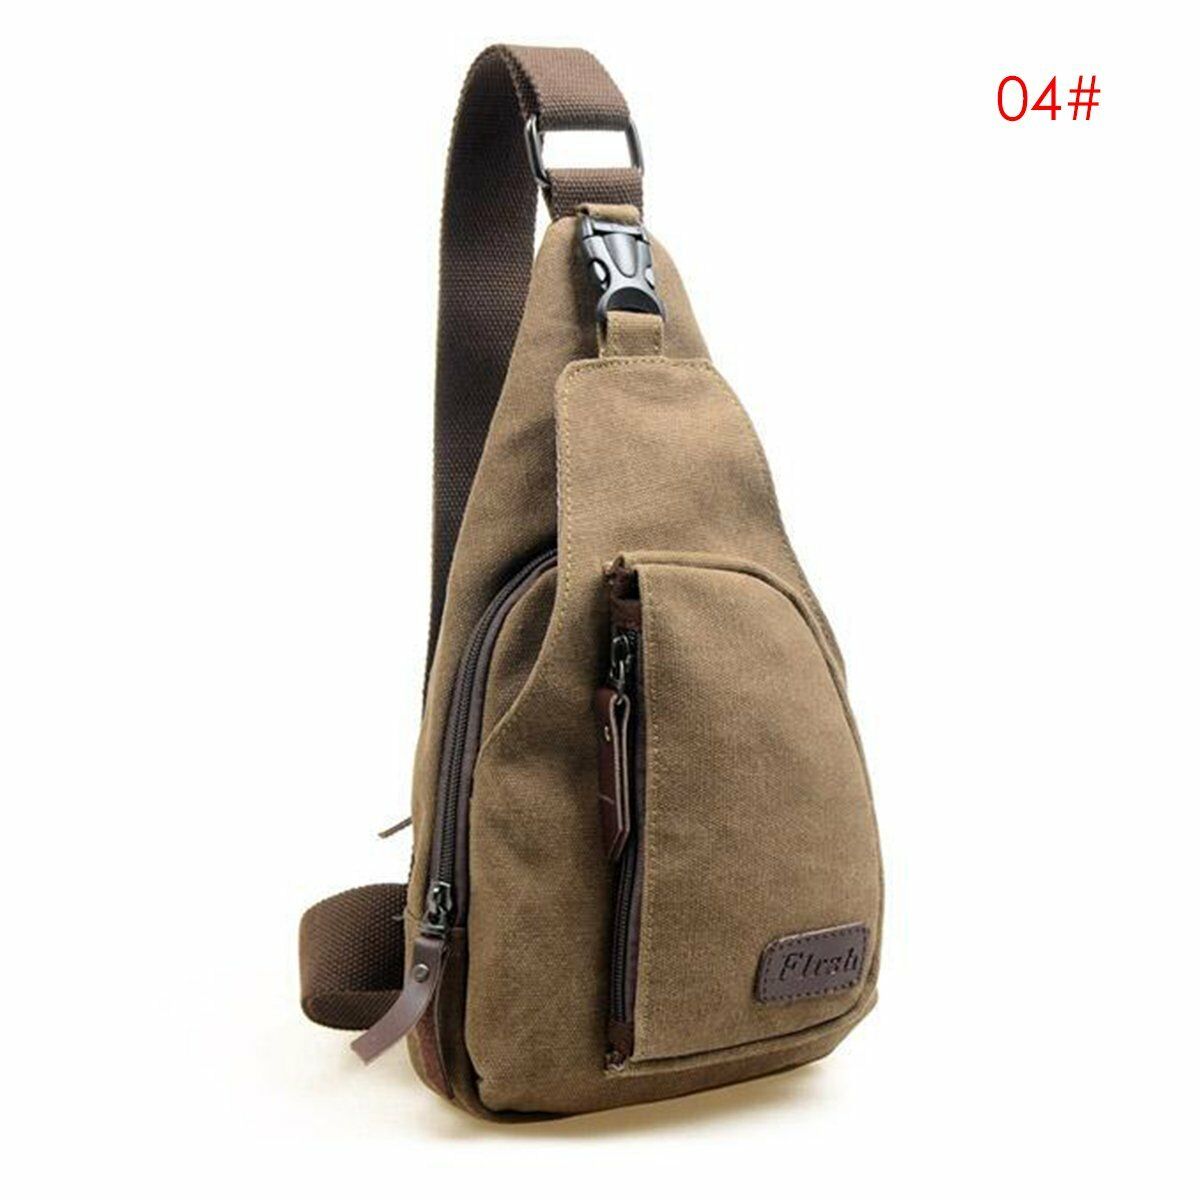 Mænds vintage lærred lærred taske skulder slynge lille bryst taske pakke vandreture sport skulder cross body tasker: Kaffe